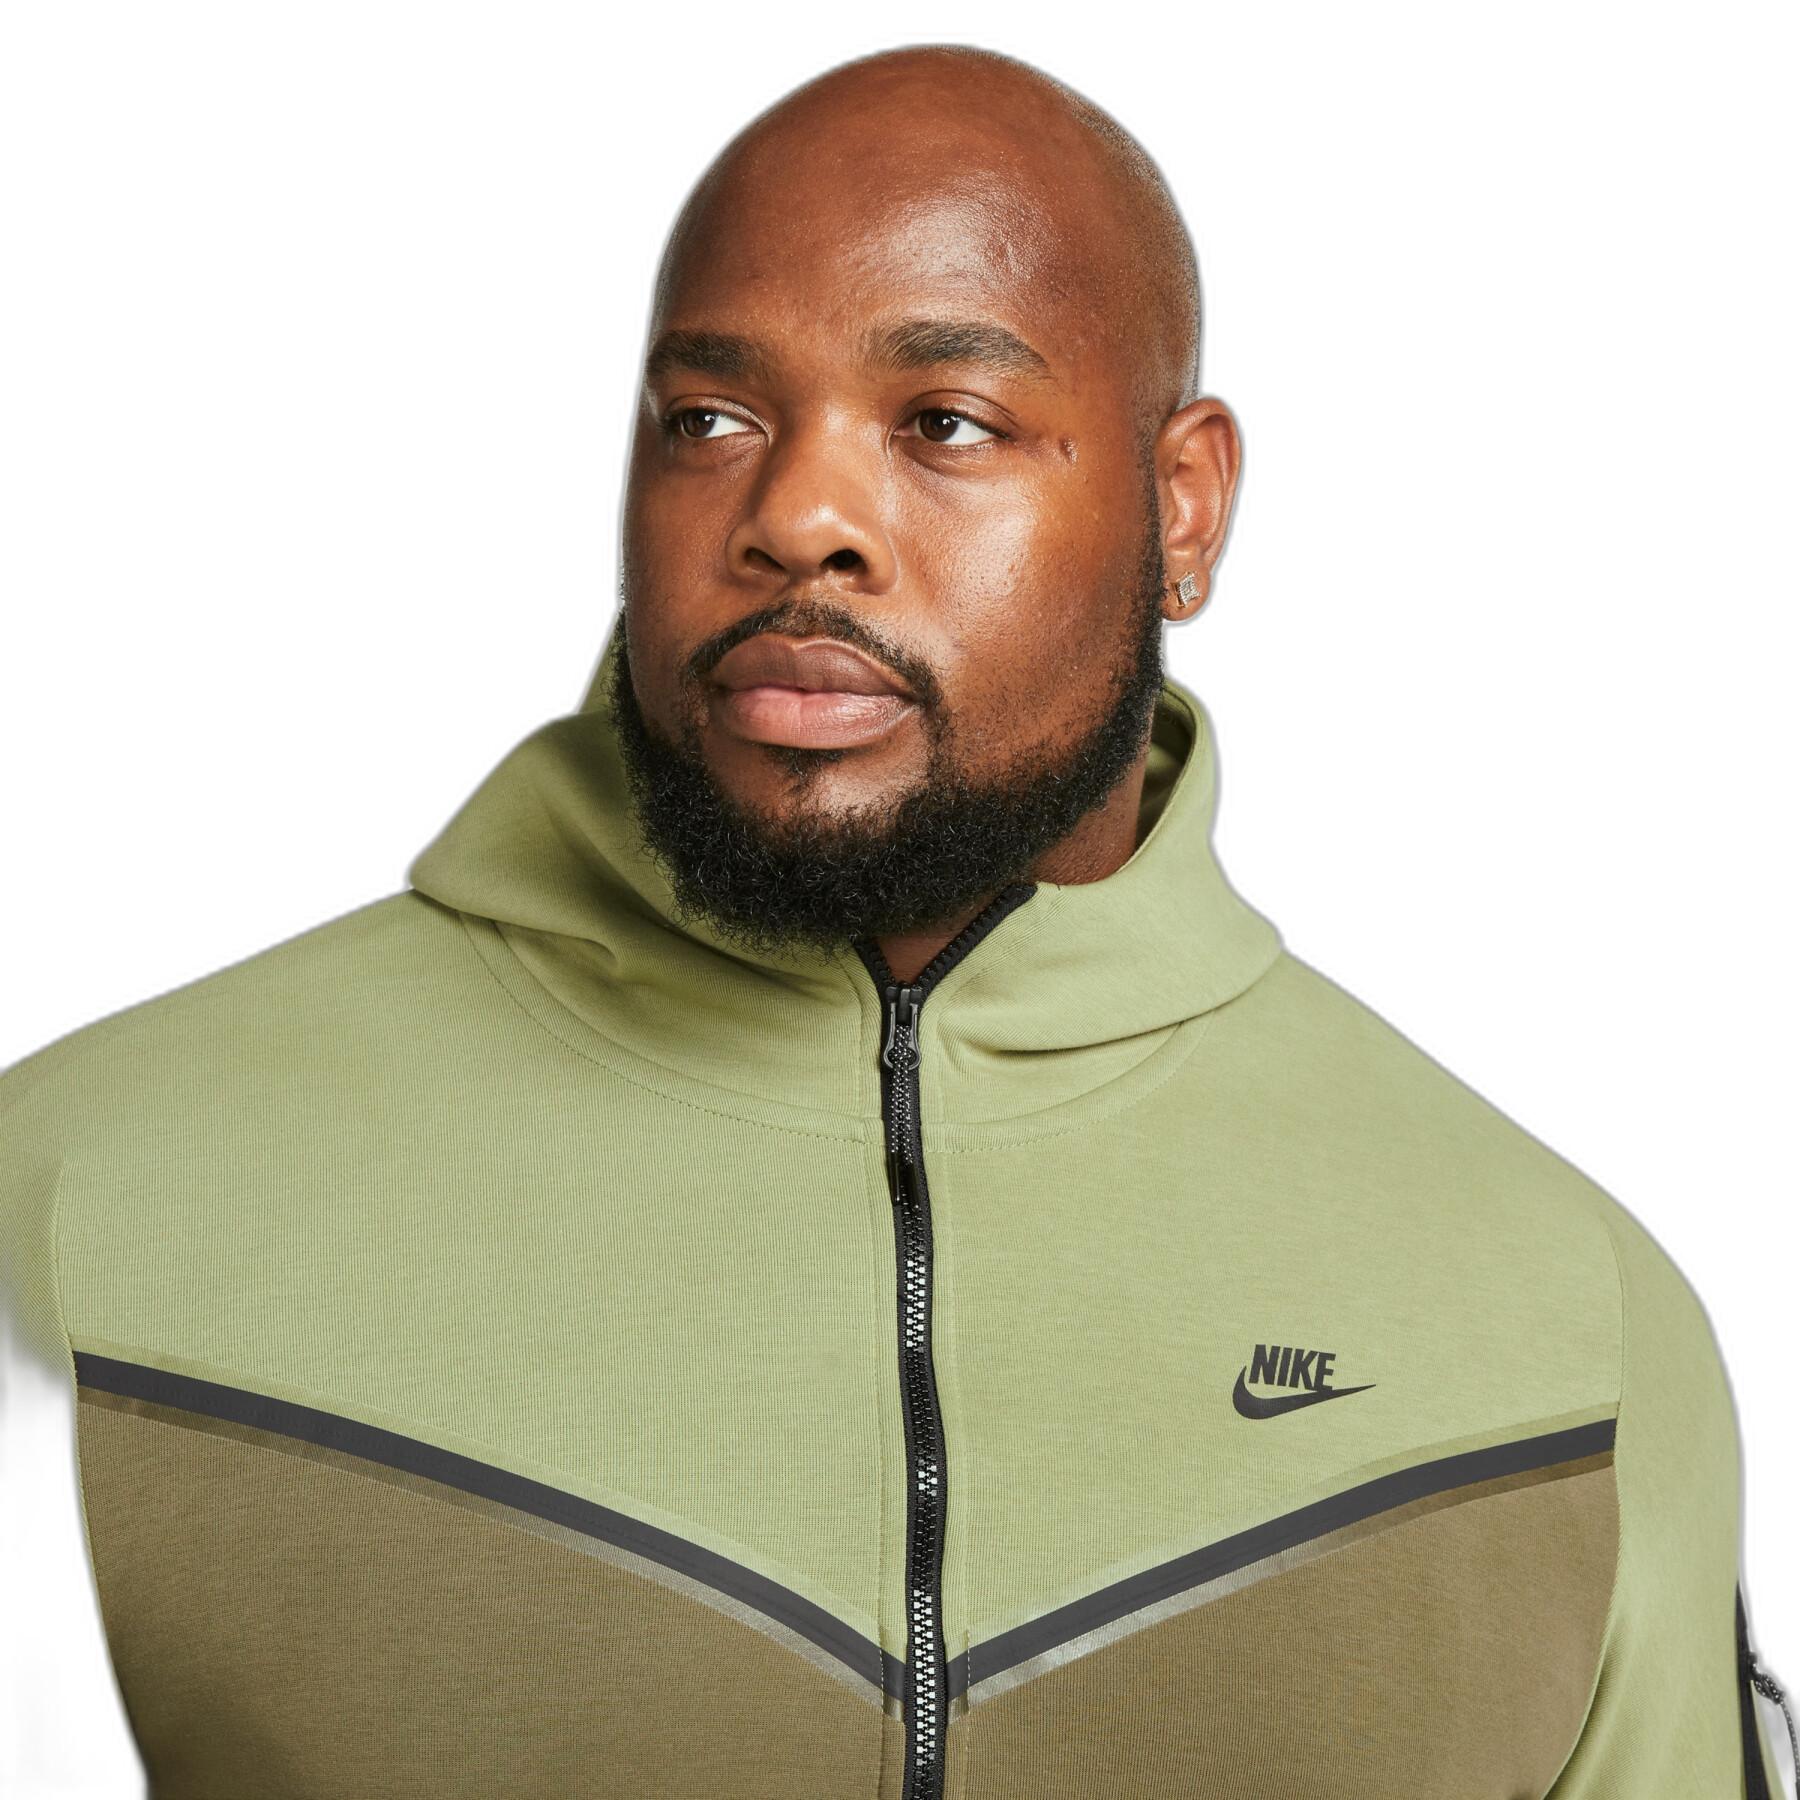 Zip-up sweatshirt Nike Sportswear Tech